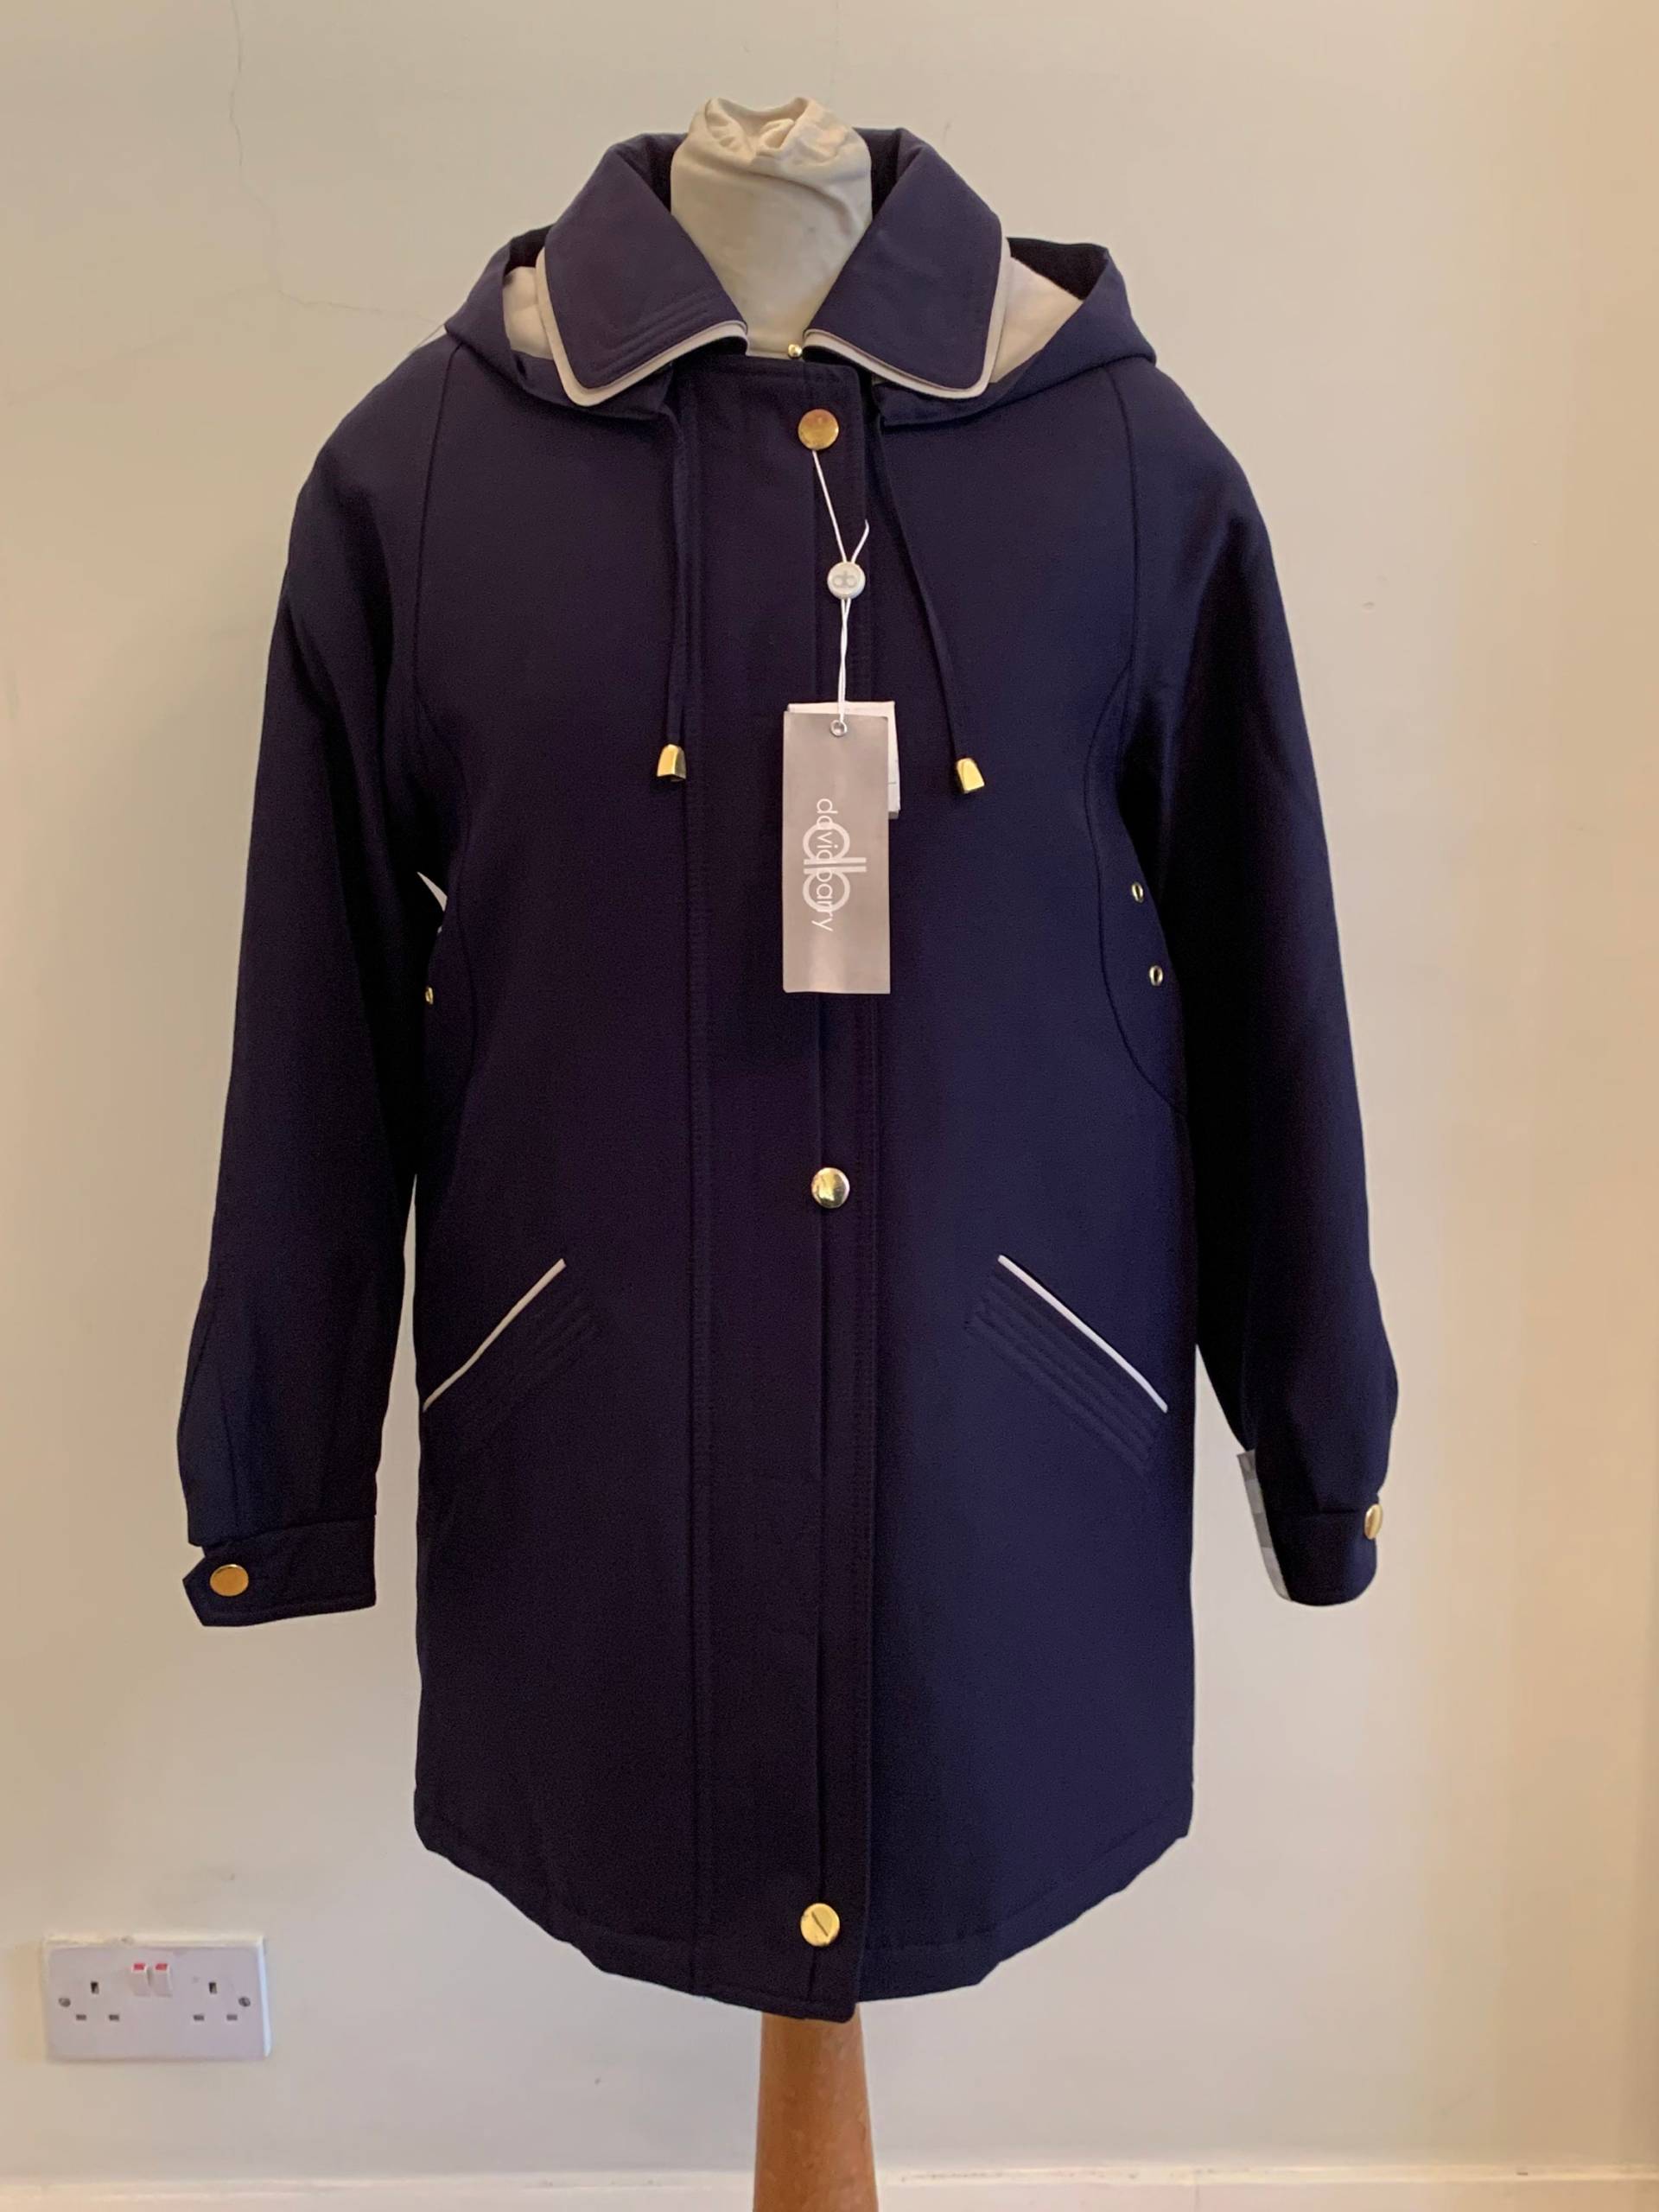 Vintage Regenmantel - Kapuzen Regen Mantel Marine Jackenmantel Damen Regenjacke Winter Outwear Frauen Geschenk Polyester von PDClothingShop